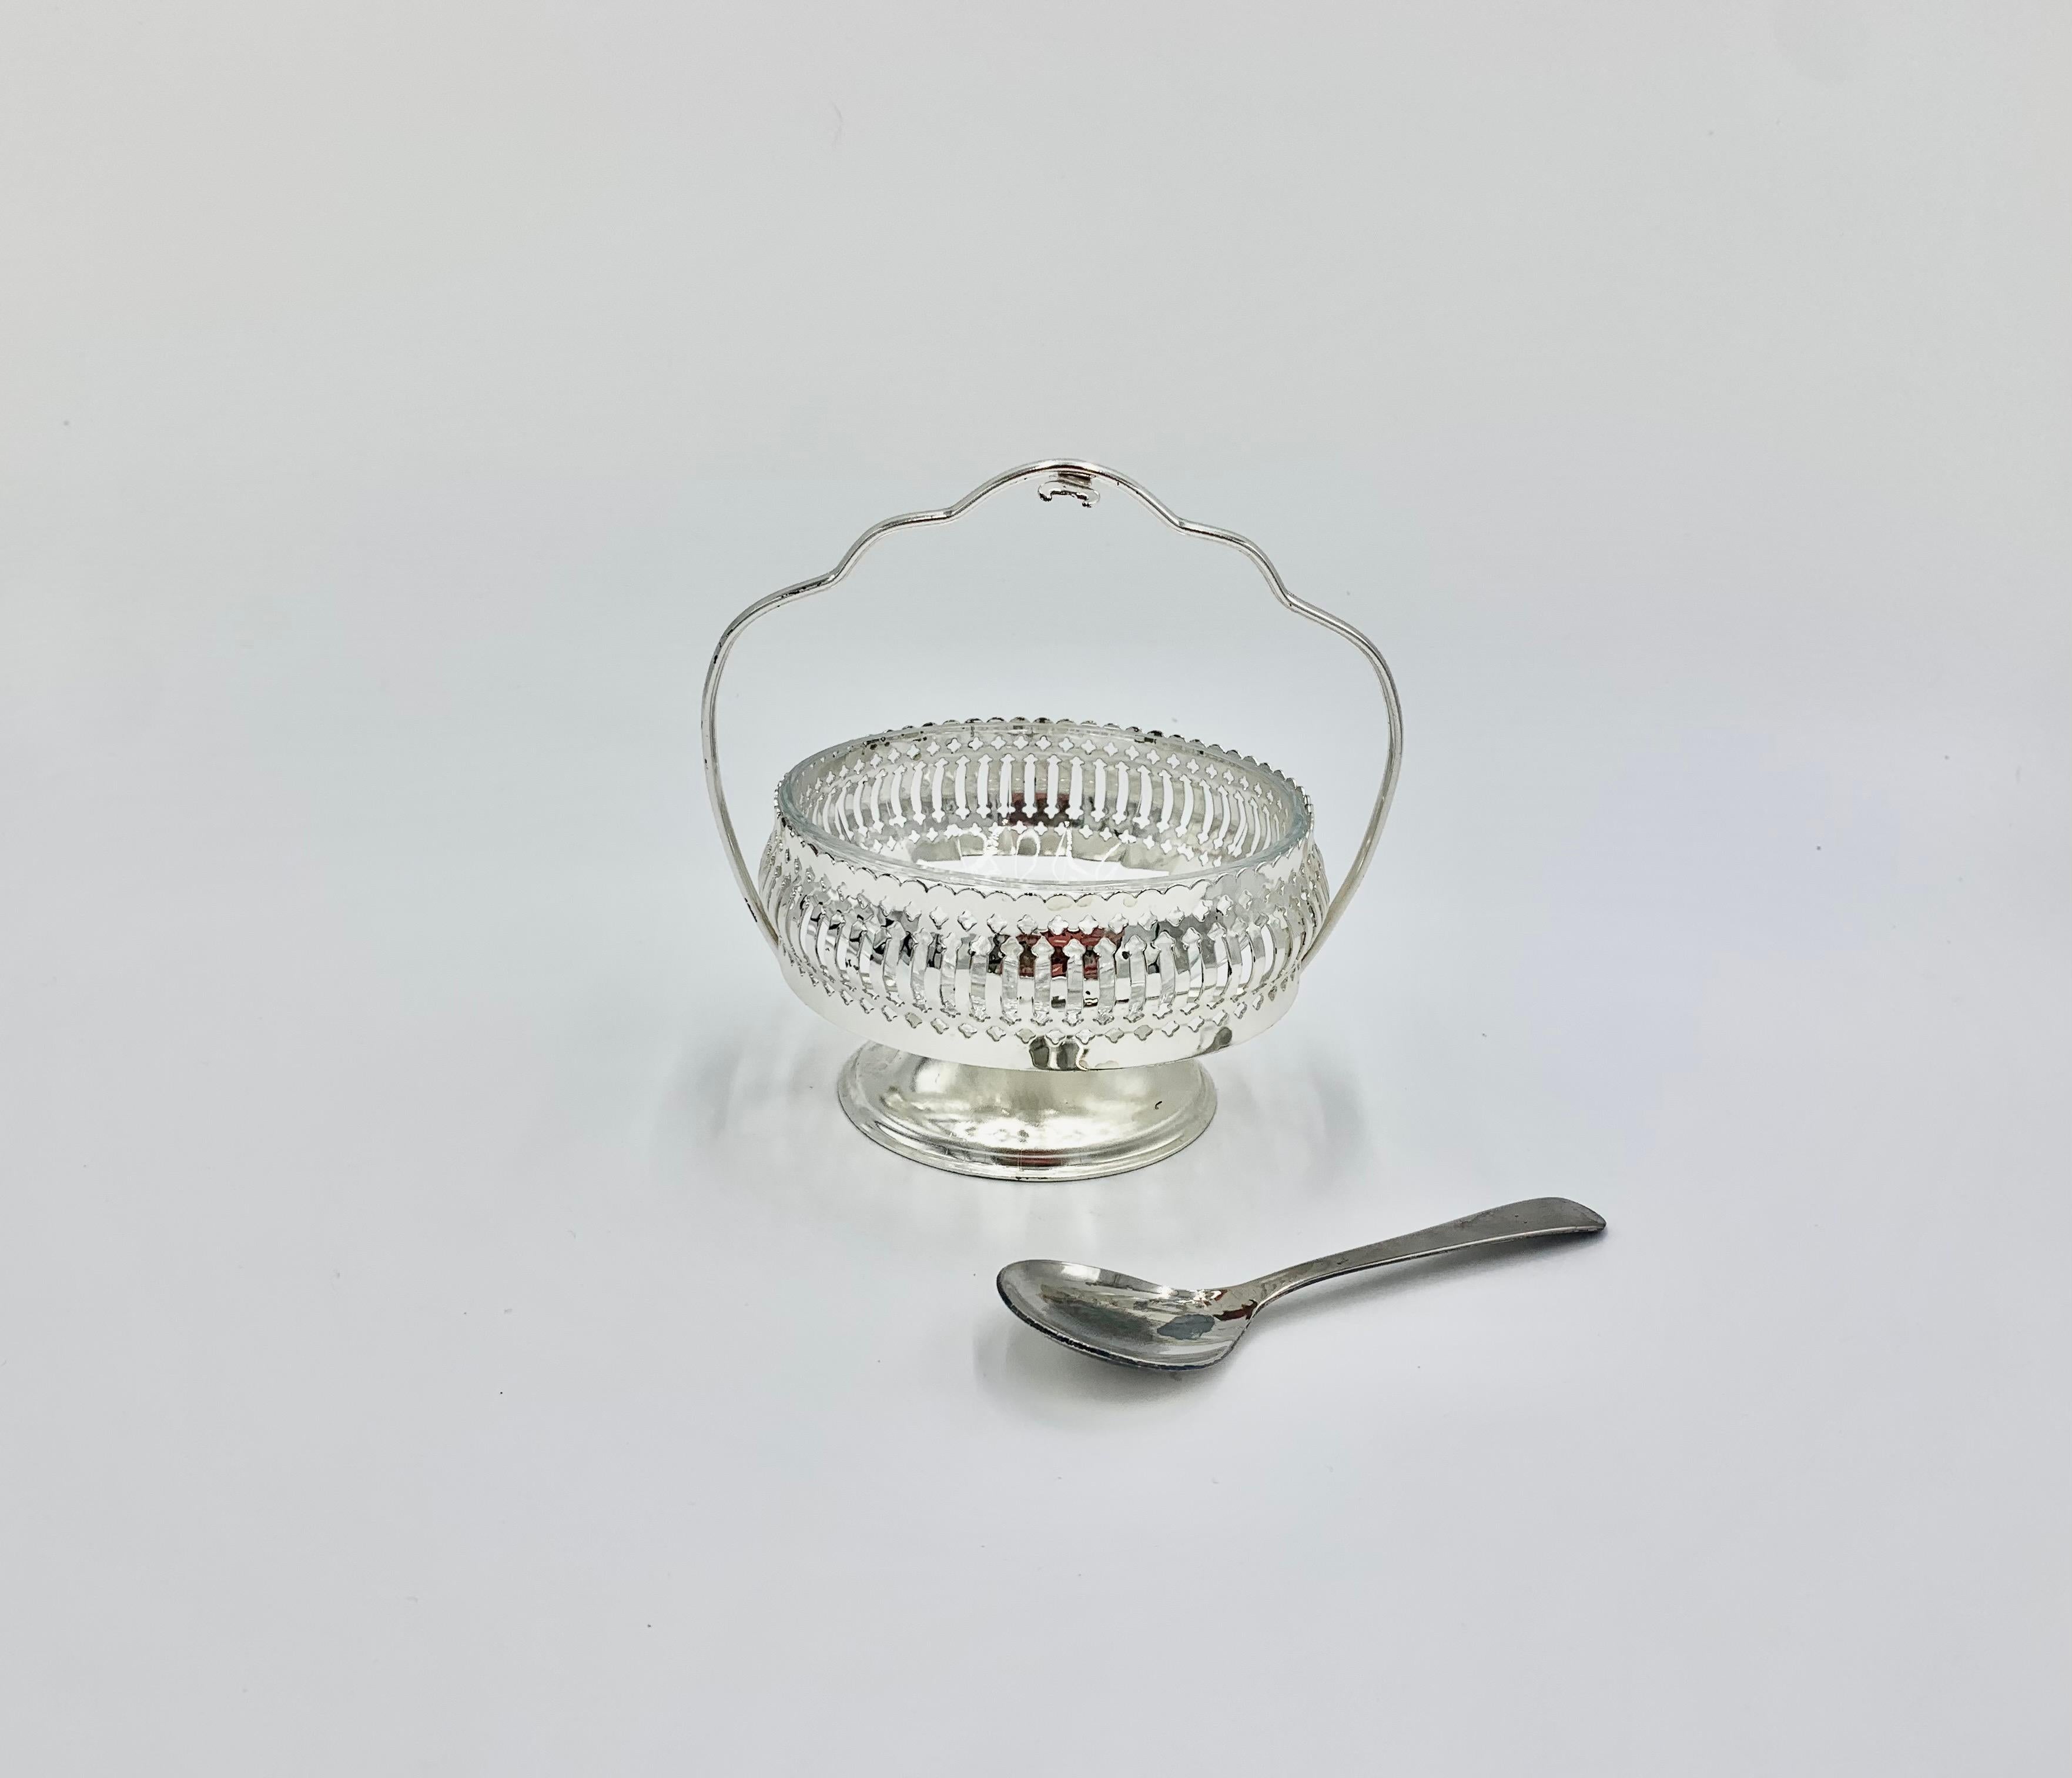 Sucrier et épice Mayell en métal argenté. Sucrier avec porte-cuillère et insert en verre. Une cuillère est incluse. Très bon état :

Mesure : hauteur 14 cm / diamètre 11 cm.